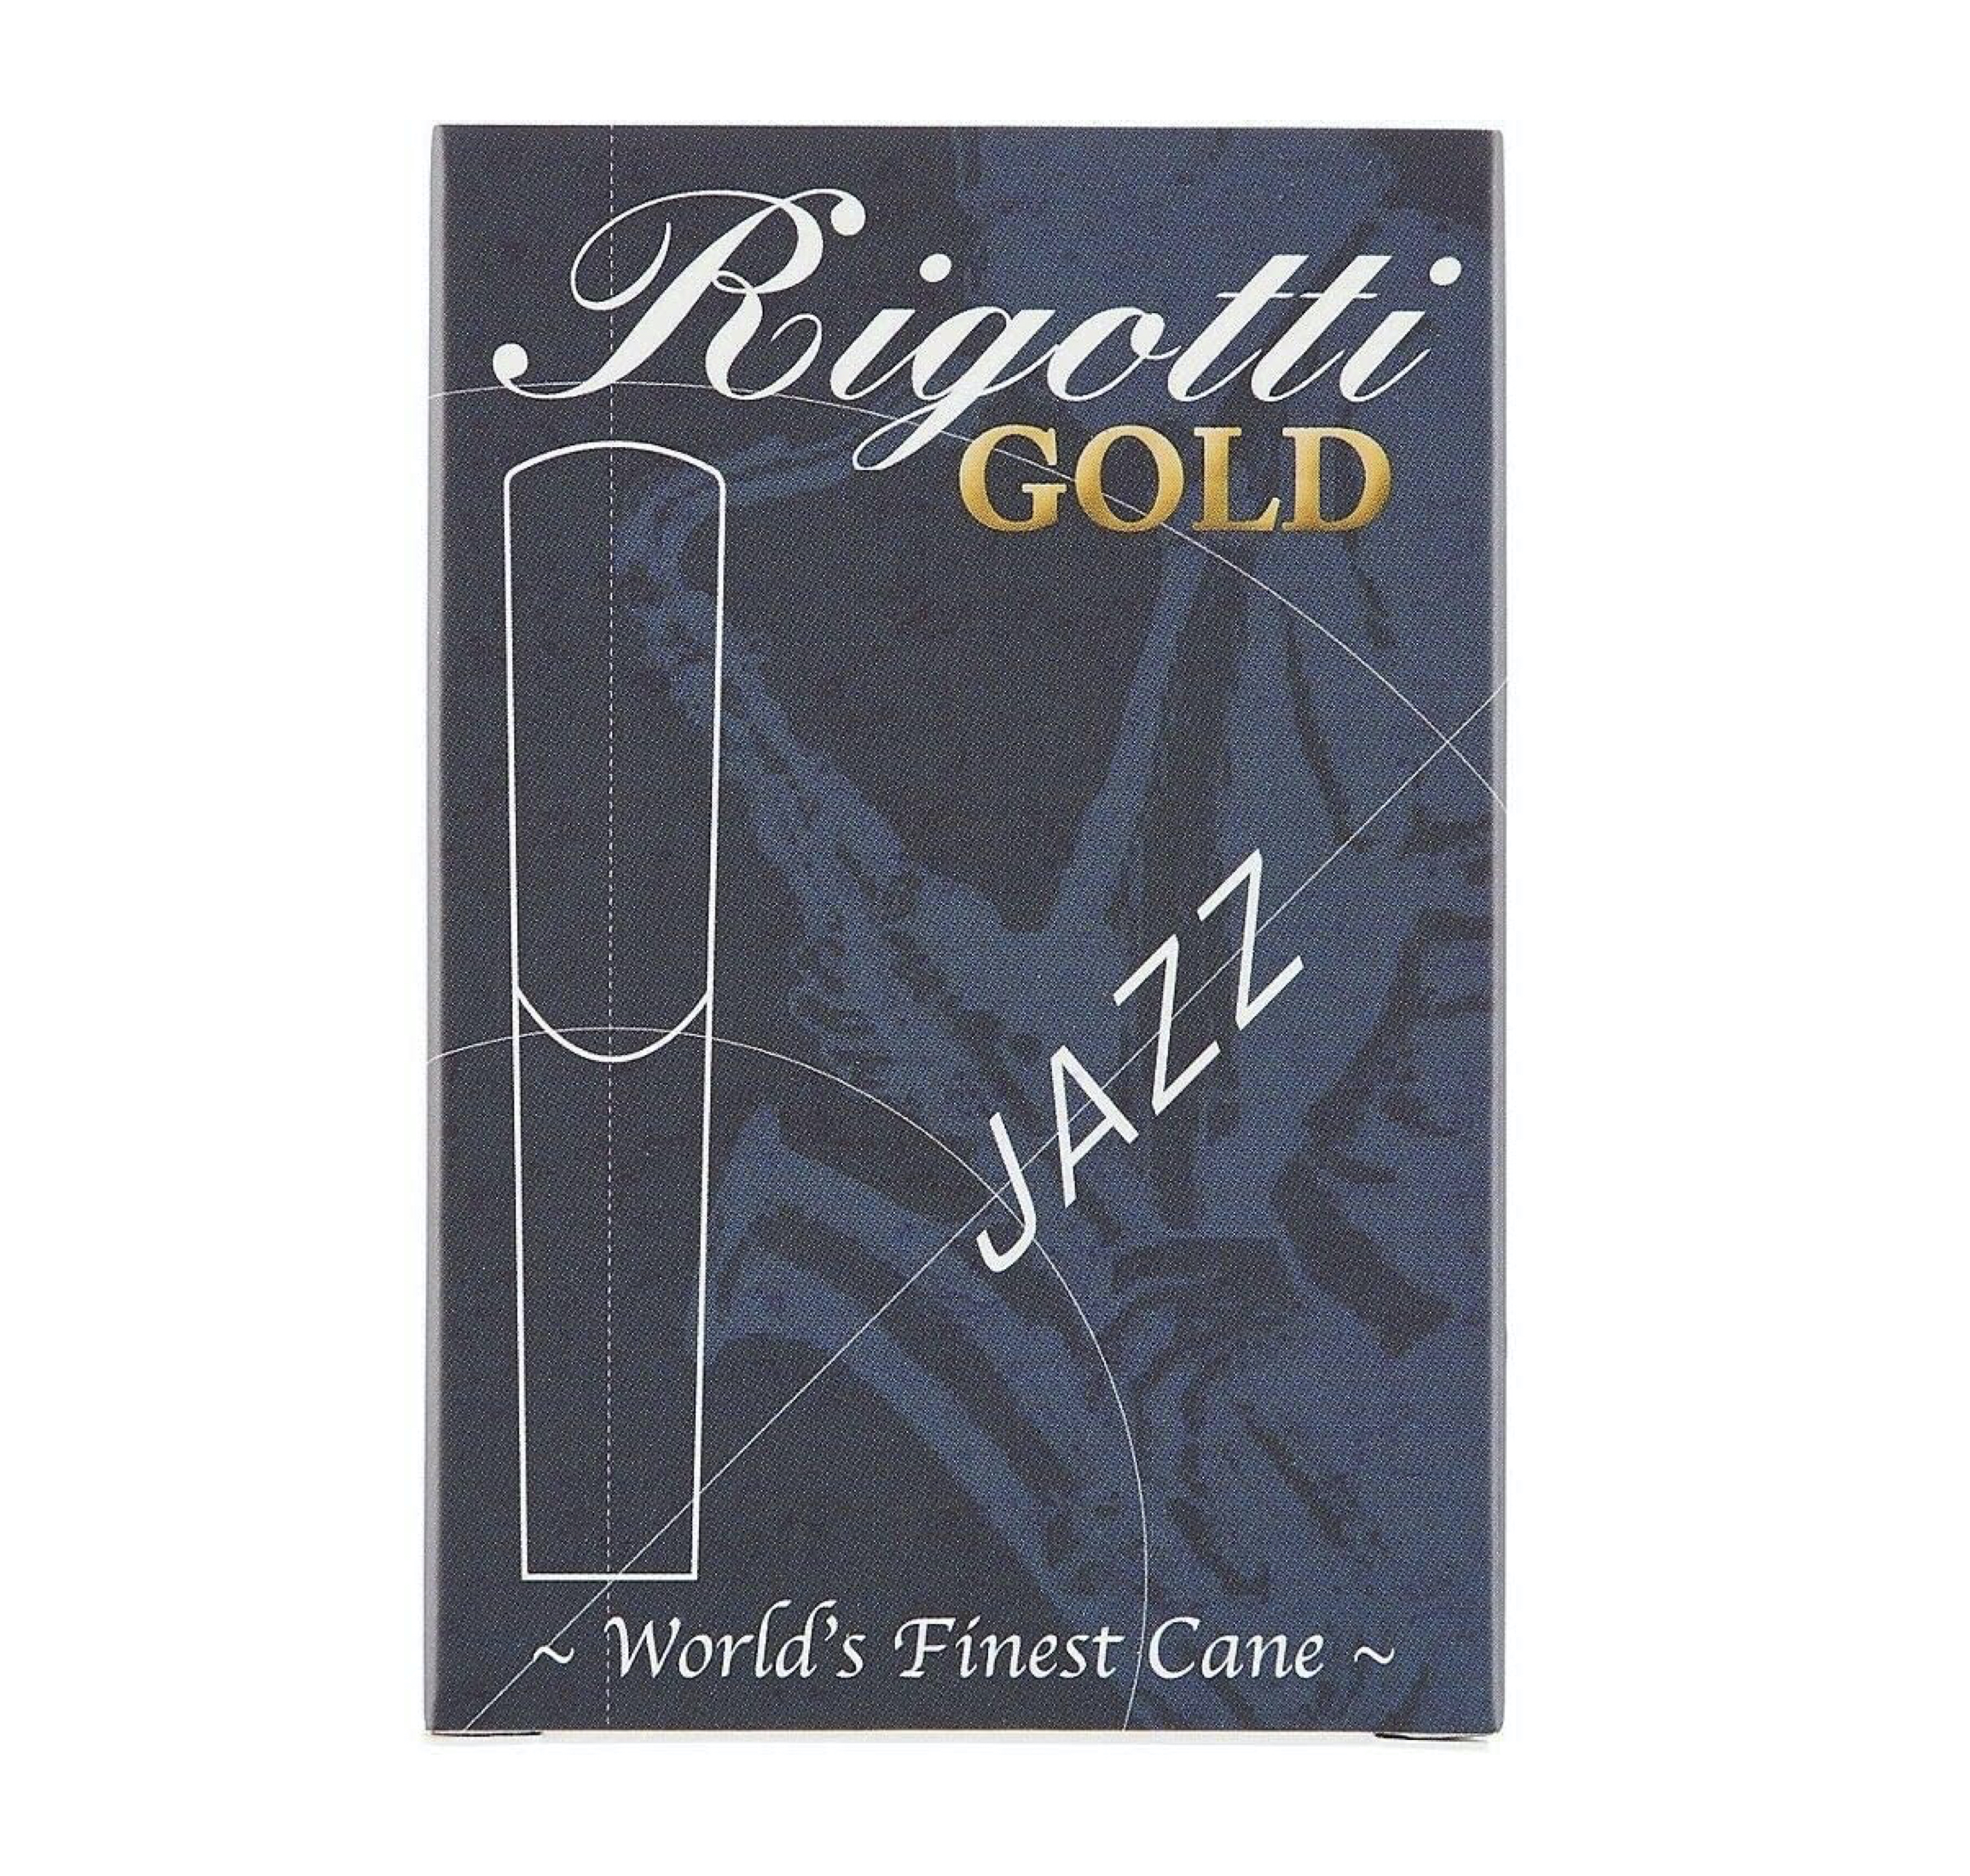 Rigotti Gold Jazz altsax riet per 10 stuks